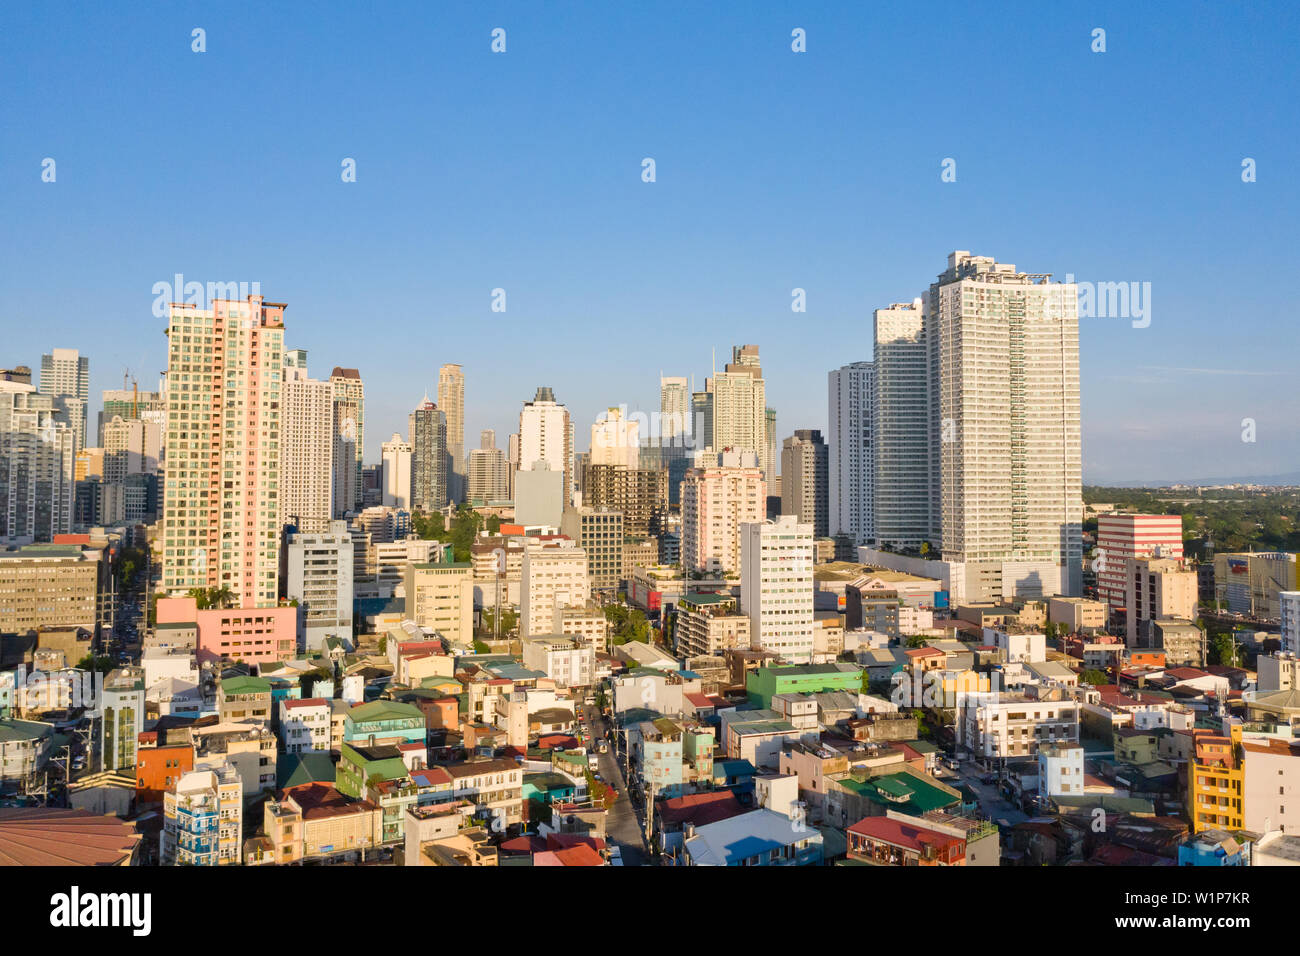 Paesaggio di Makati, il centro affari di Manila, vista dall'alto. Metropoli asiatica al mattino, vista dall'alto. Grattacieli e quartieri residenziali, la capitale delle Filippine. Città moderna. Foto Stock